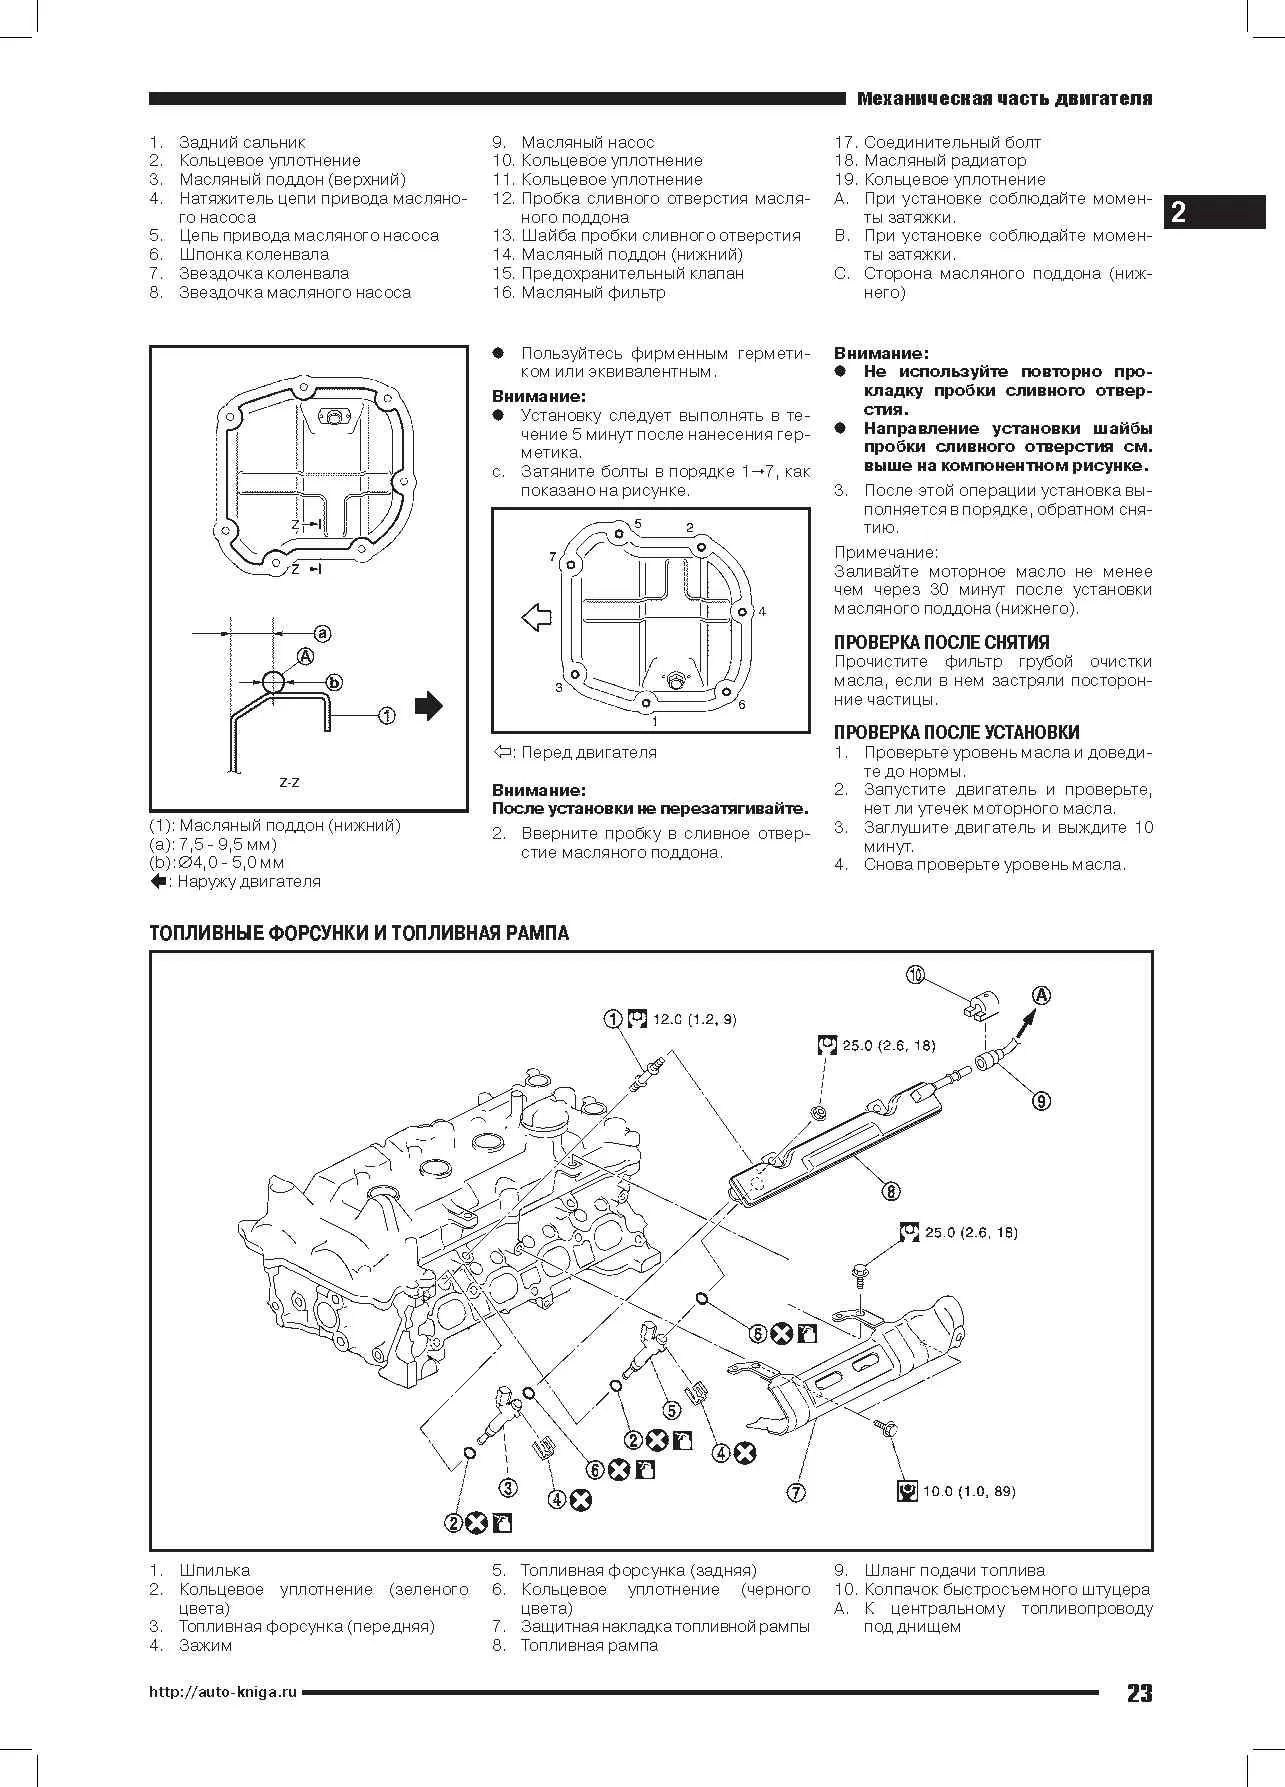 Книга двигатели Nissan HR16DE и Renault H4M, электросхемы. Руководство по ремонту и эксплуатации. Автонавигатор